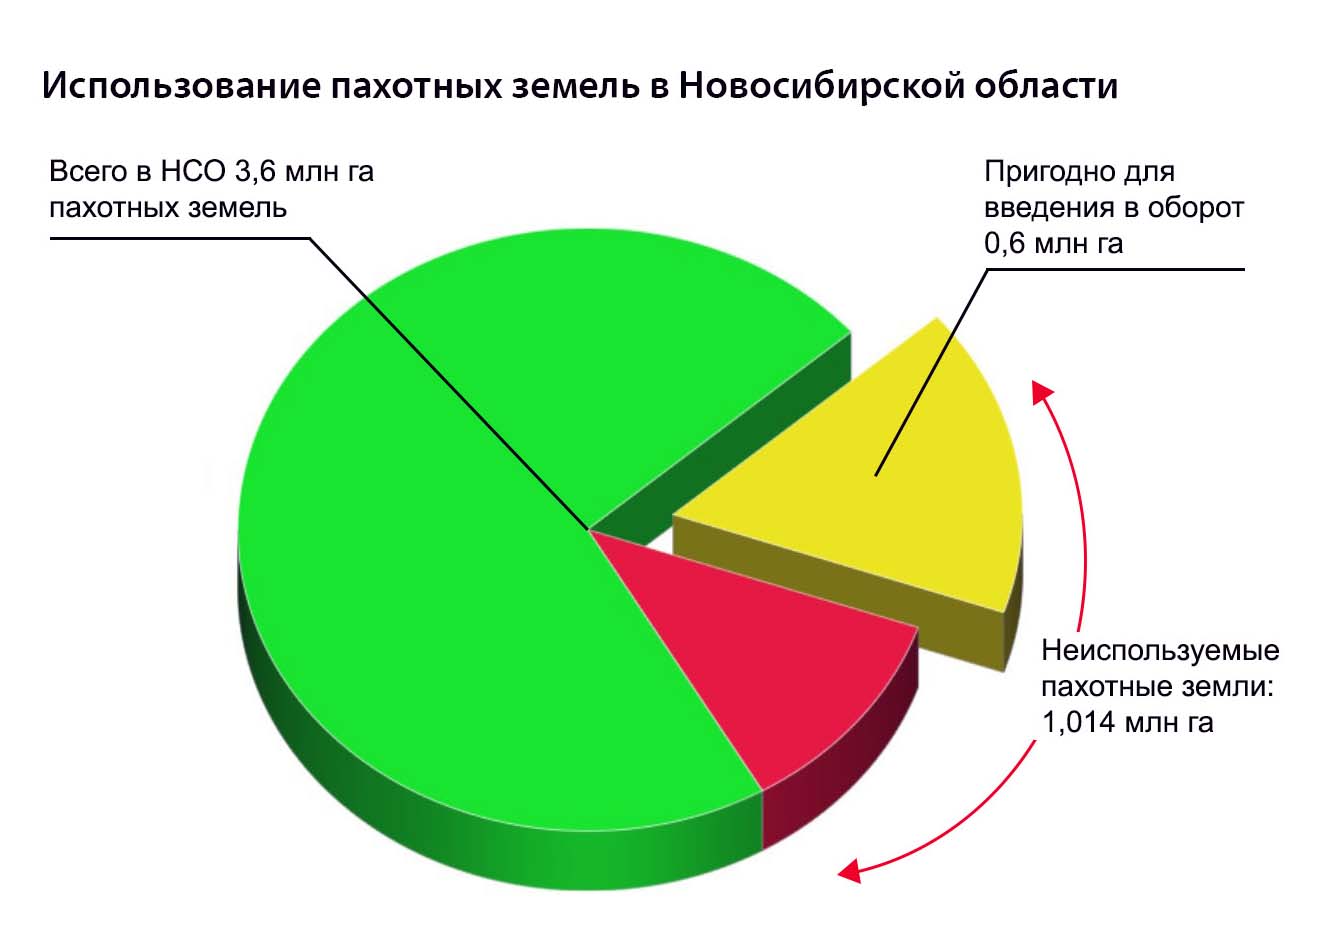 База земель сельхозназначения Новосибирской области необходима дляпривлечения инвестиций - Журнал ПРЕДСЕДАТЕЛЬ